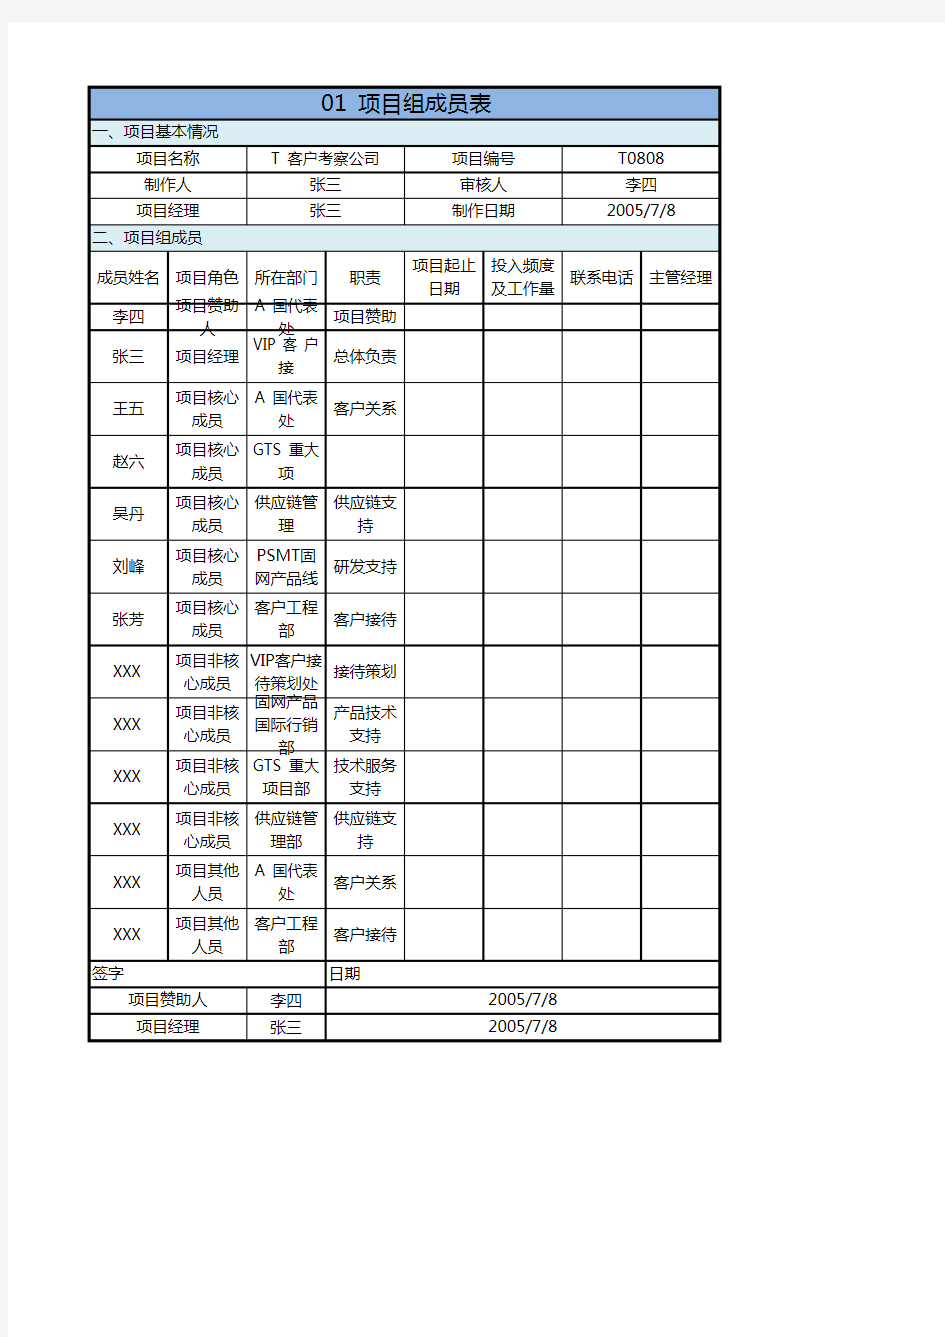 华为项目管理模板Excel版-项目组成员表(可直接套用)